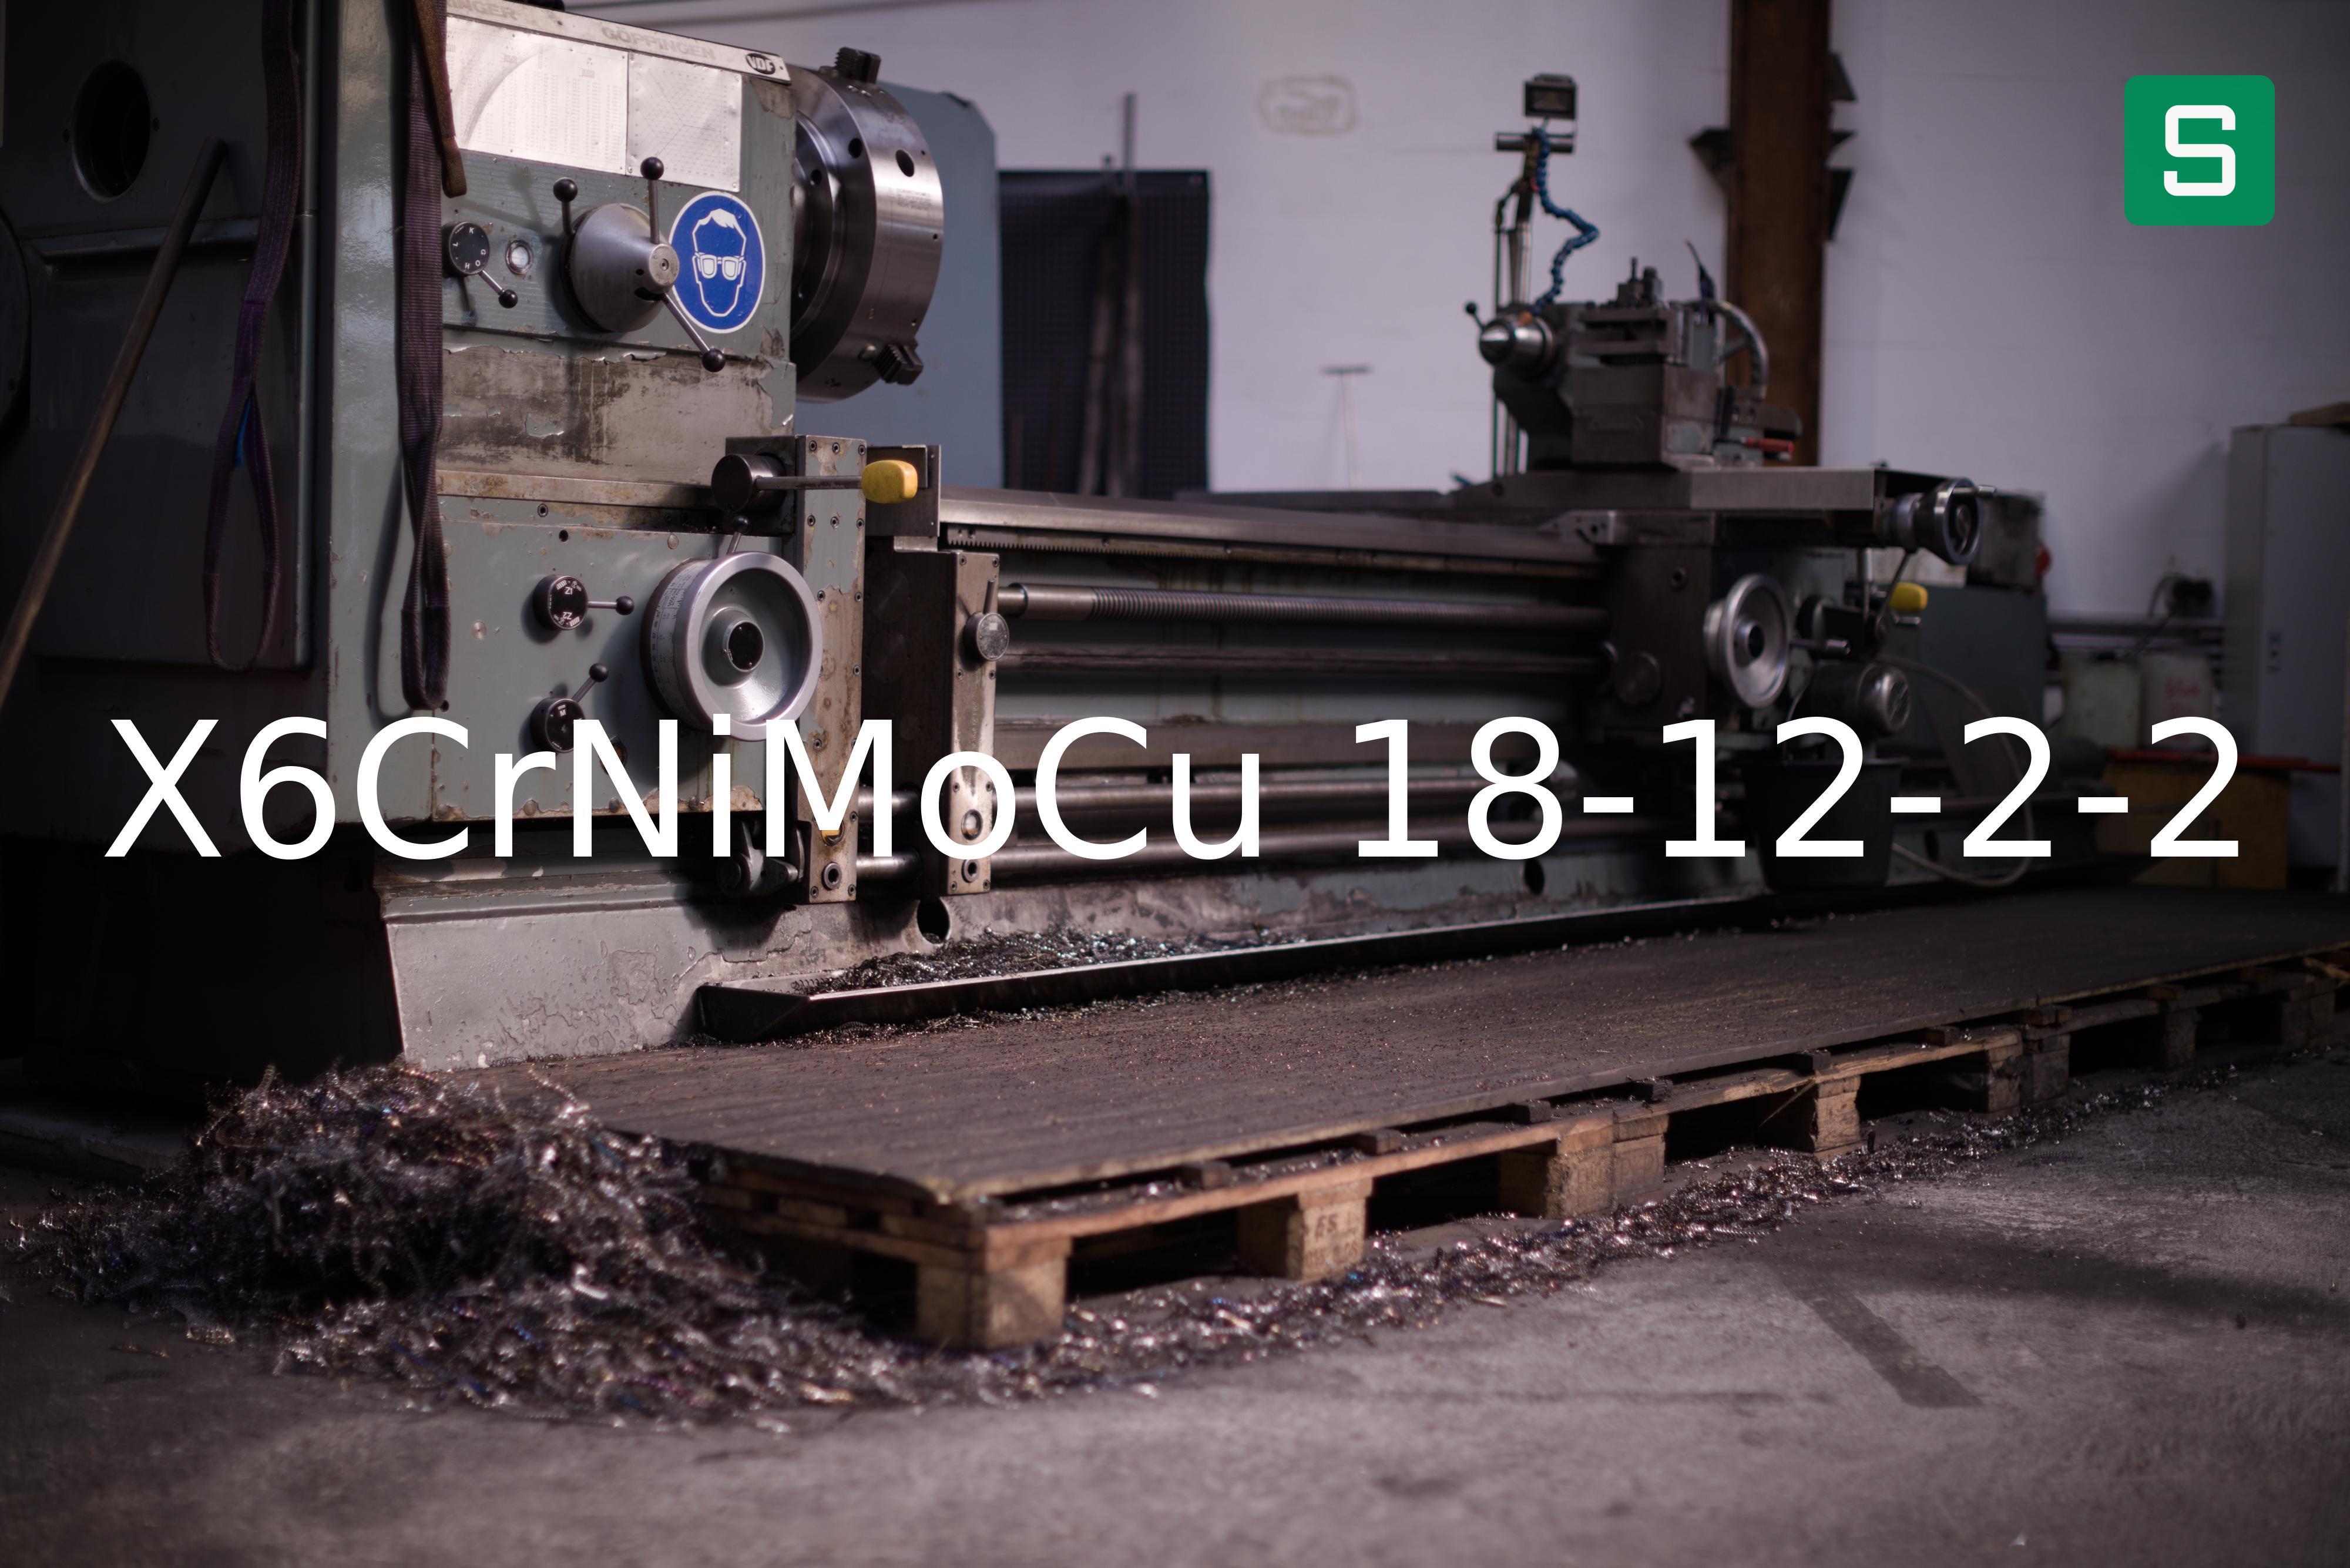 Steel Material: X6CrNiMoCu 18-12-2-2